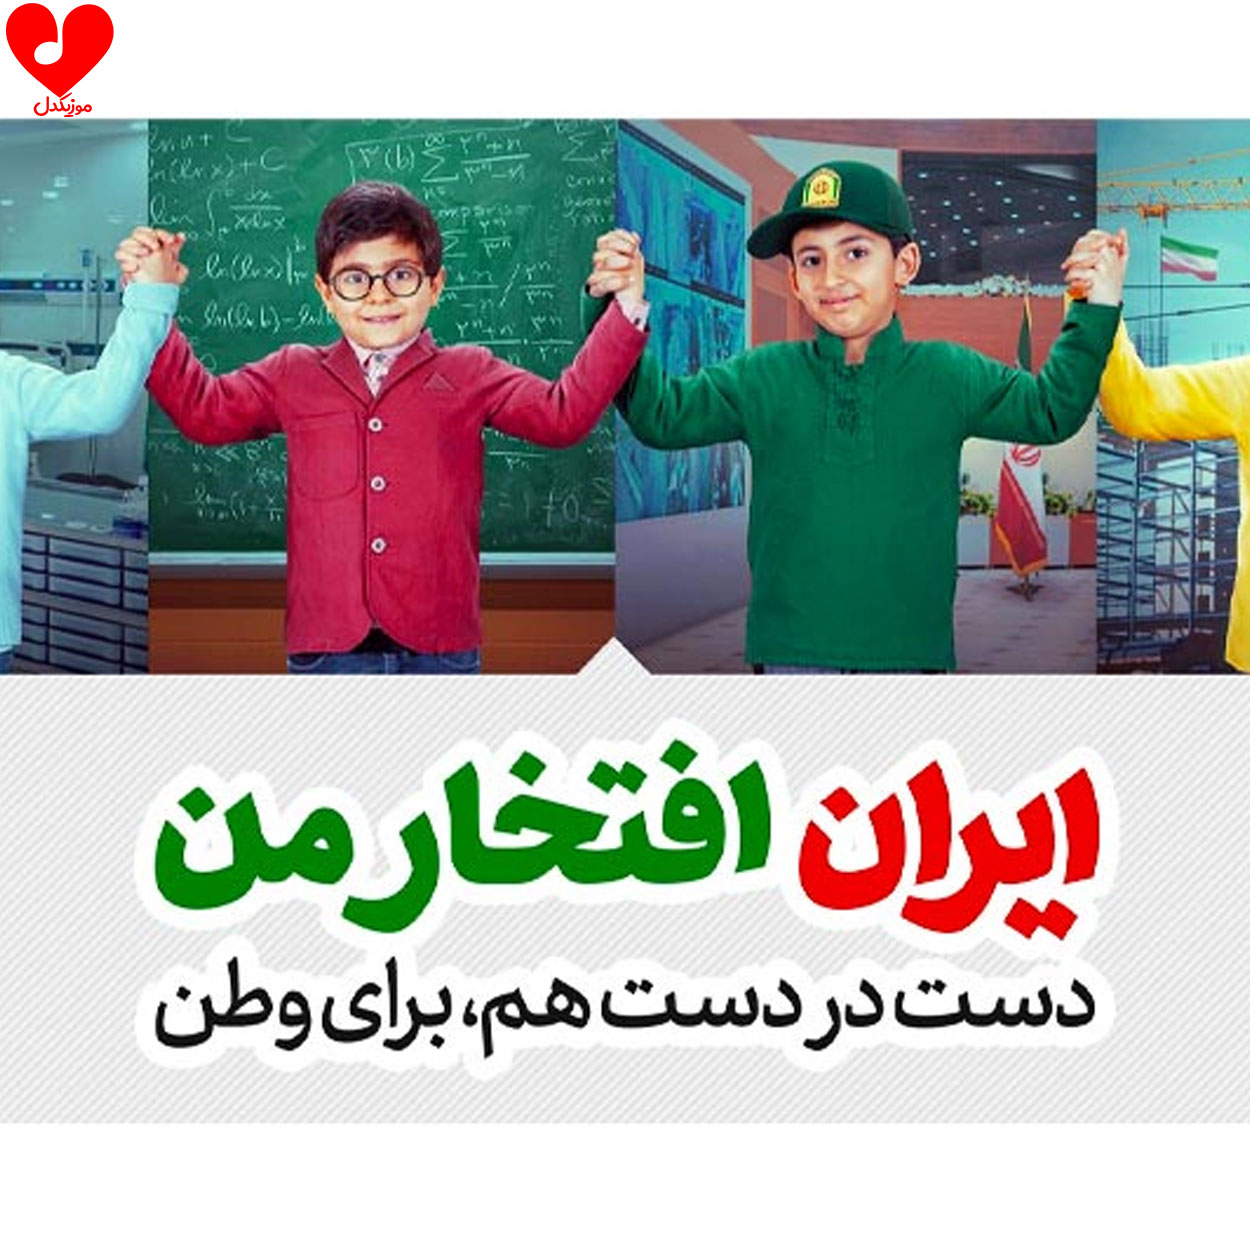 دانلود آهنگ ایران افتخار من (سرود با کلام و بی کلام + متن نماهنگ)